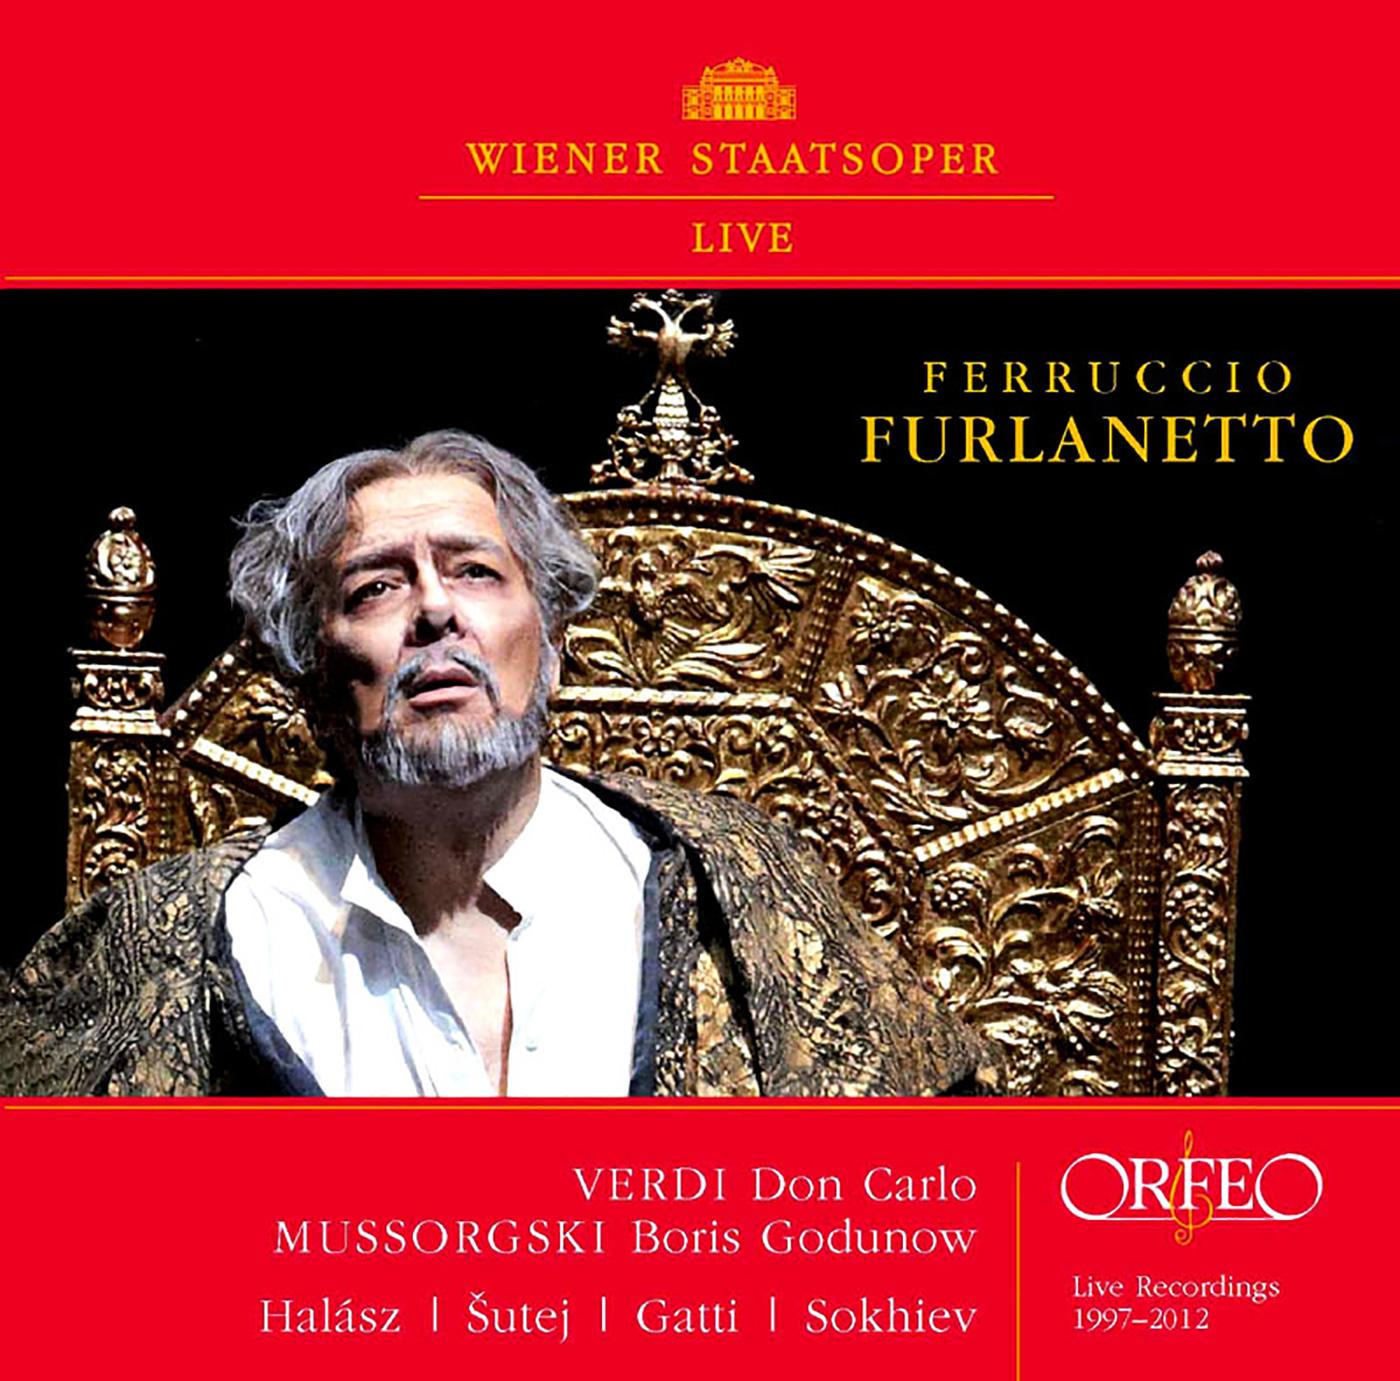 Ferruccio Furlanetto - Don Carlo*:Act III Scene 1: Giustizia, giustizia, Sire!